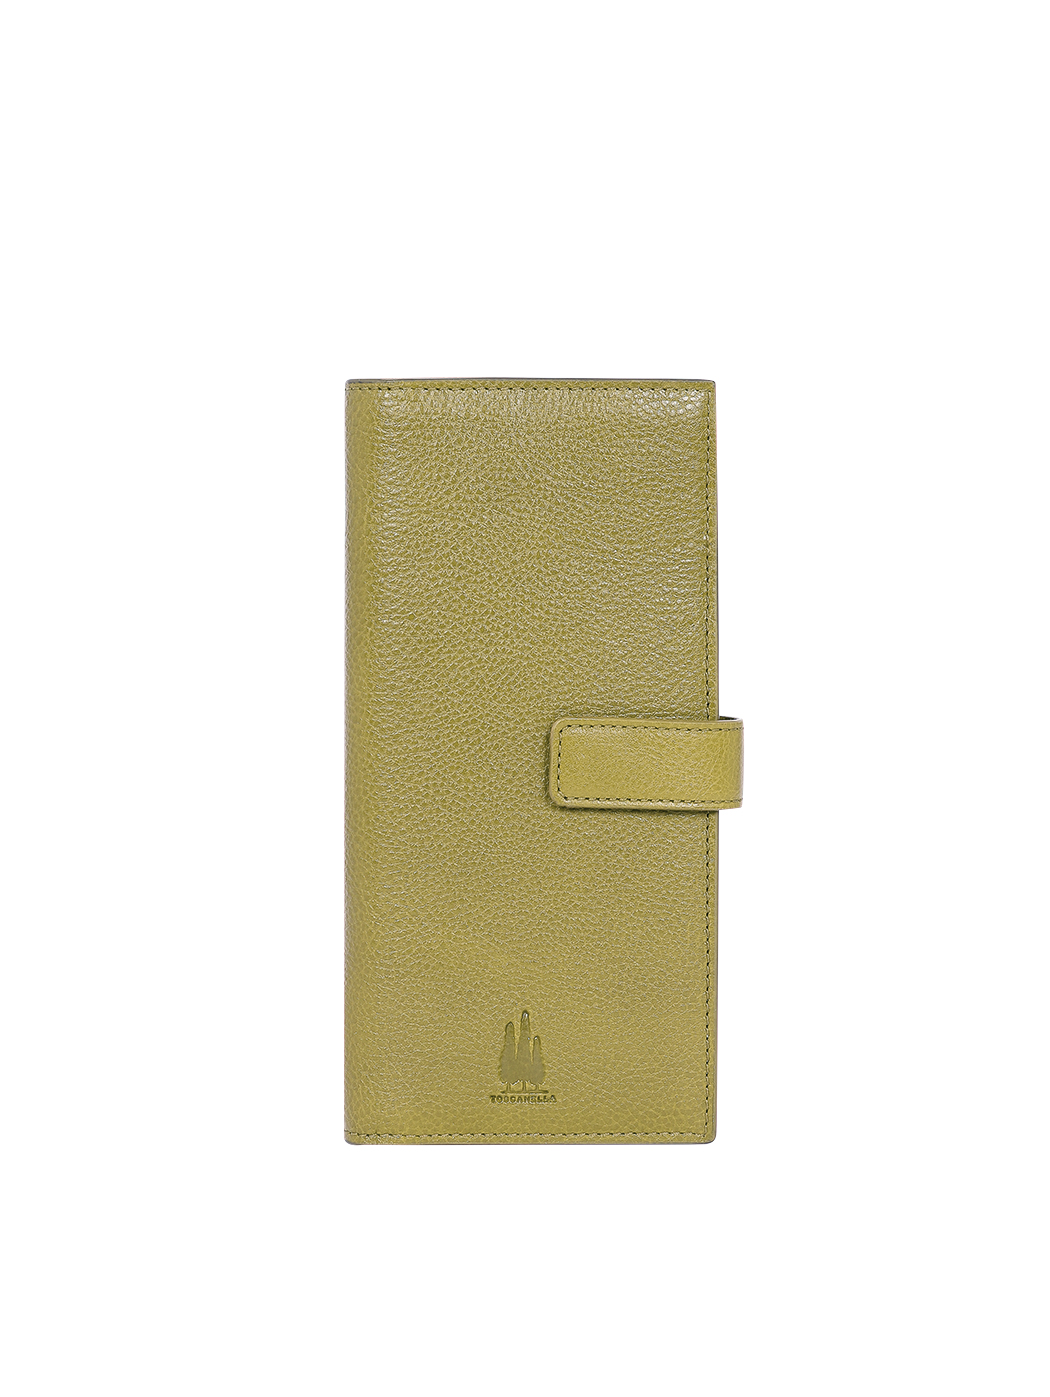 Женский кошелек со слотами под карточки оливковый зеленый